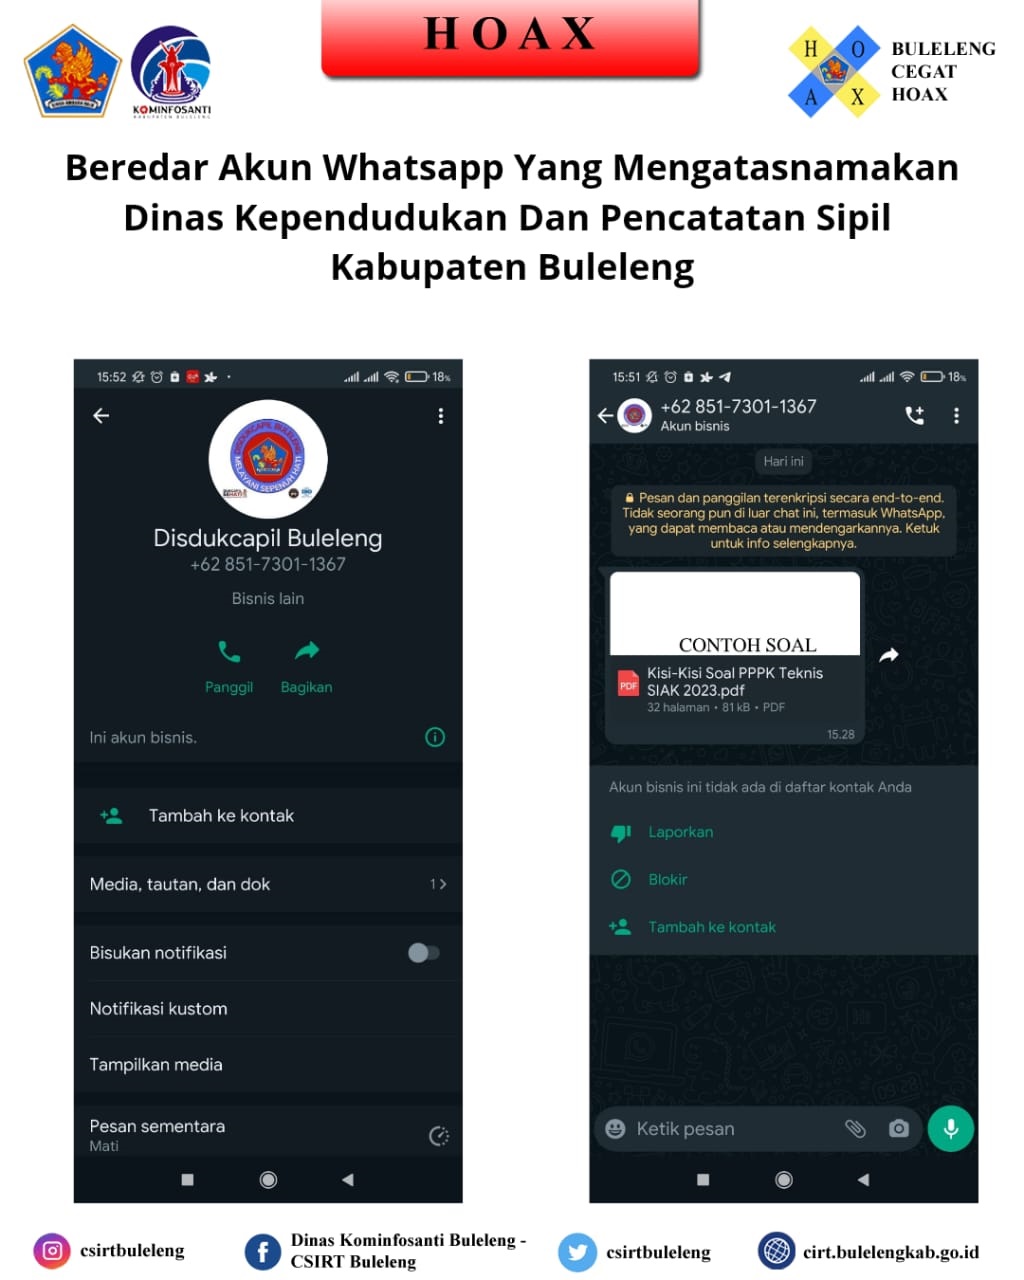 Beredar akun Whatsapp yang mengatasnamakan Dinas Kependudukan dan Pencatatan Sipil Kabupaten Buleleng